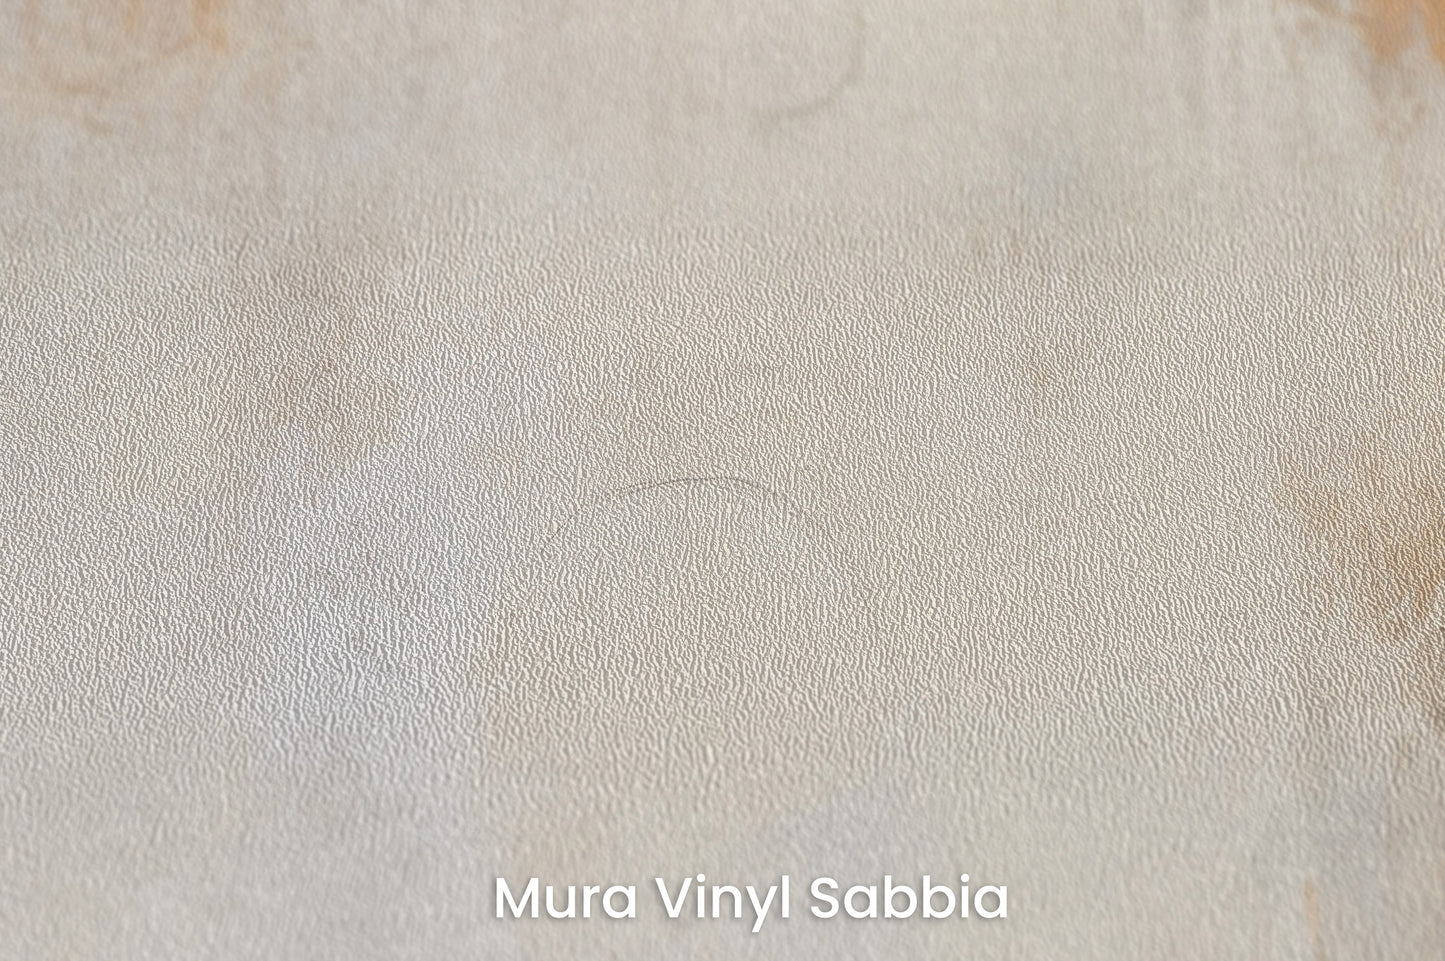 Zbliżenie na artystyczną fototapetę o nazwie ETHEREAL ECHOES ARTISTRY na podłożu Mura Vinyl Sabbia struktura grubego ziarna piasku.